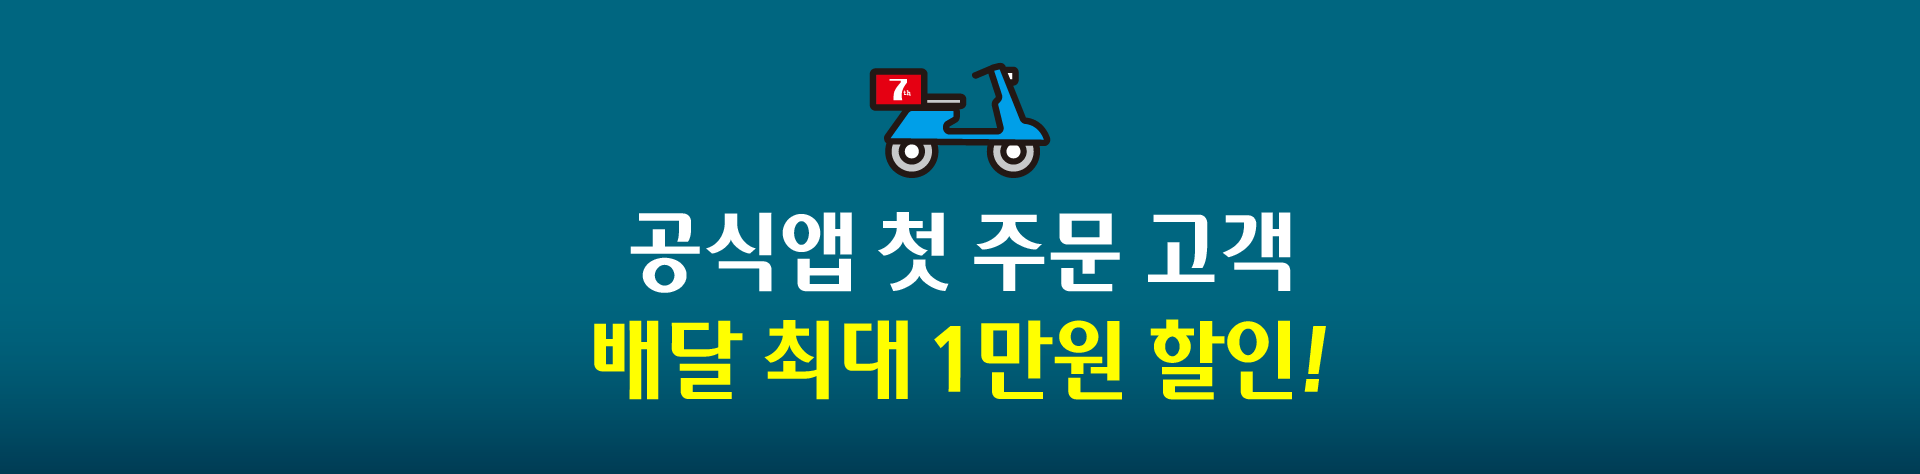 공식앱 첫주문 고객 배달 최대 1만원 할인!